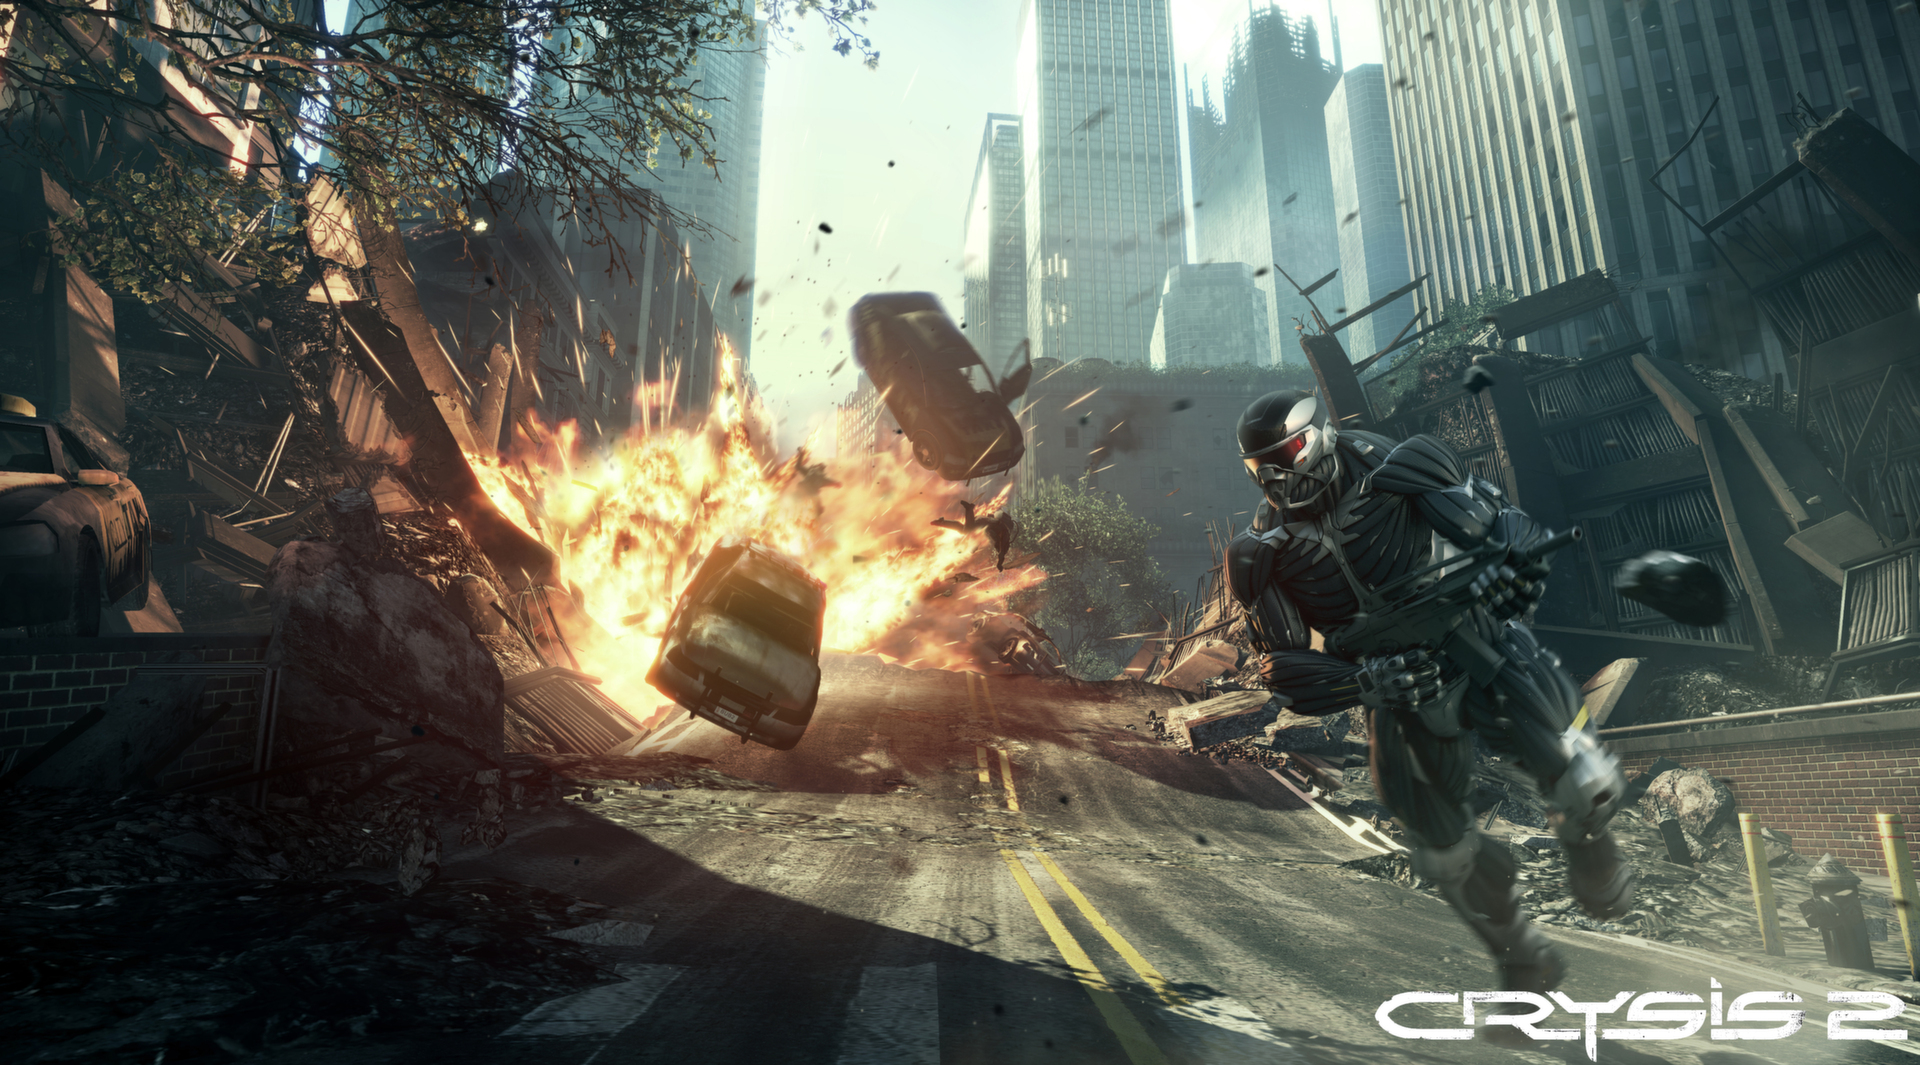 Crysis 2 - Maximum Edition trên Steam | Hình 1